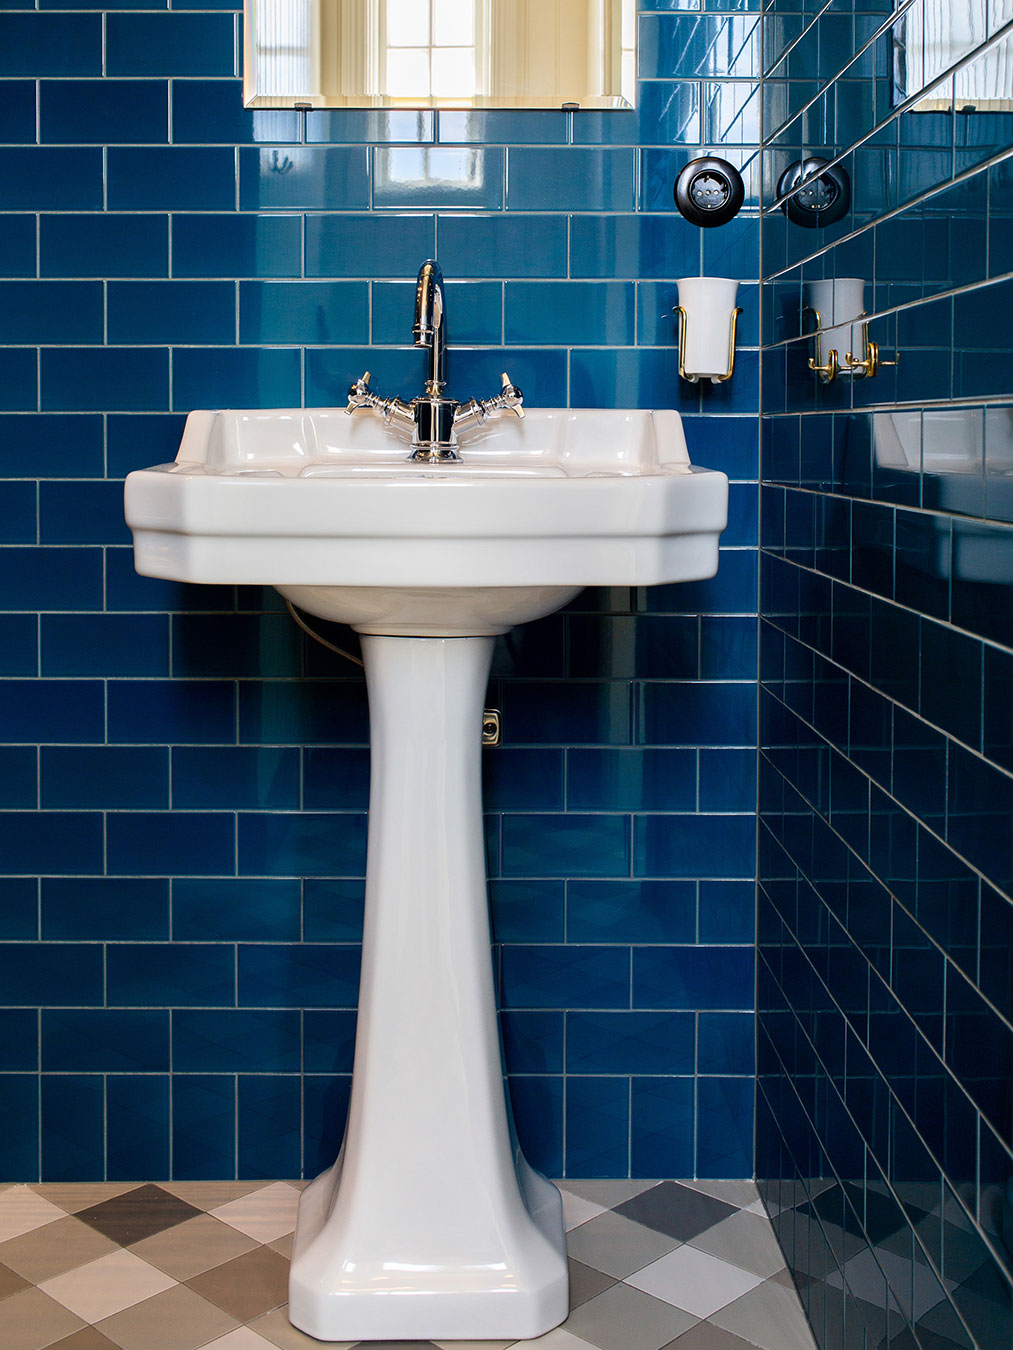 Toalett med tvättställ och kakel i kulör Baroque blue.